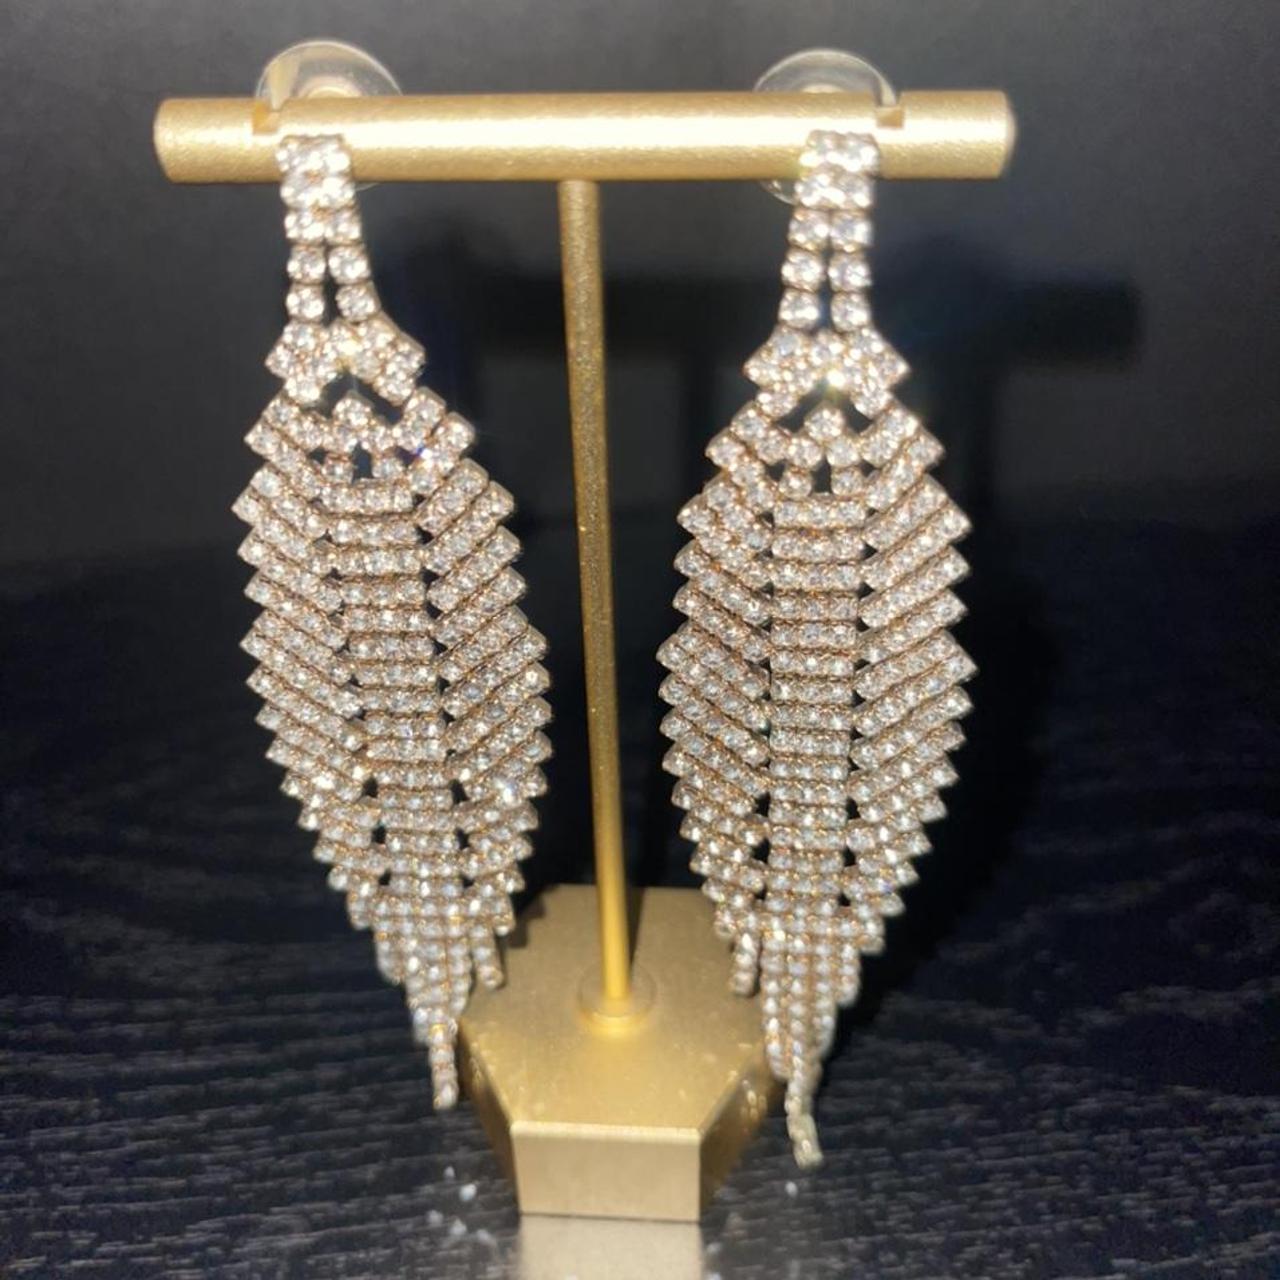 gold w/ rhinestone jewels dropped earrings /... - Depop